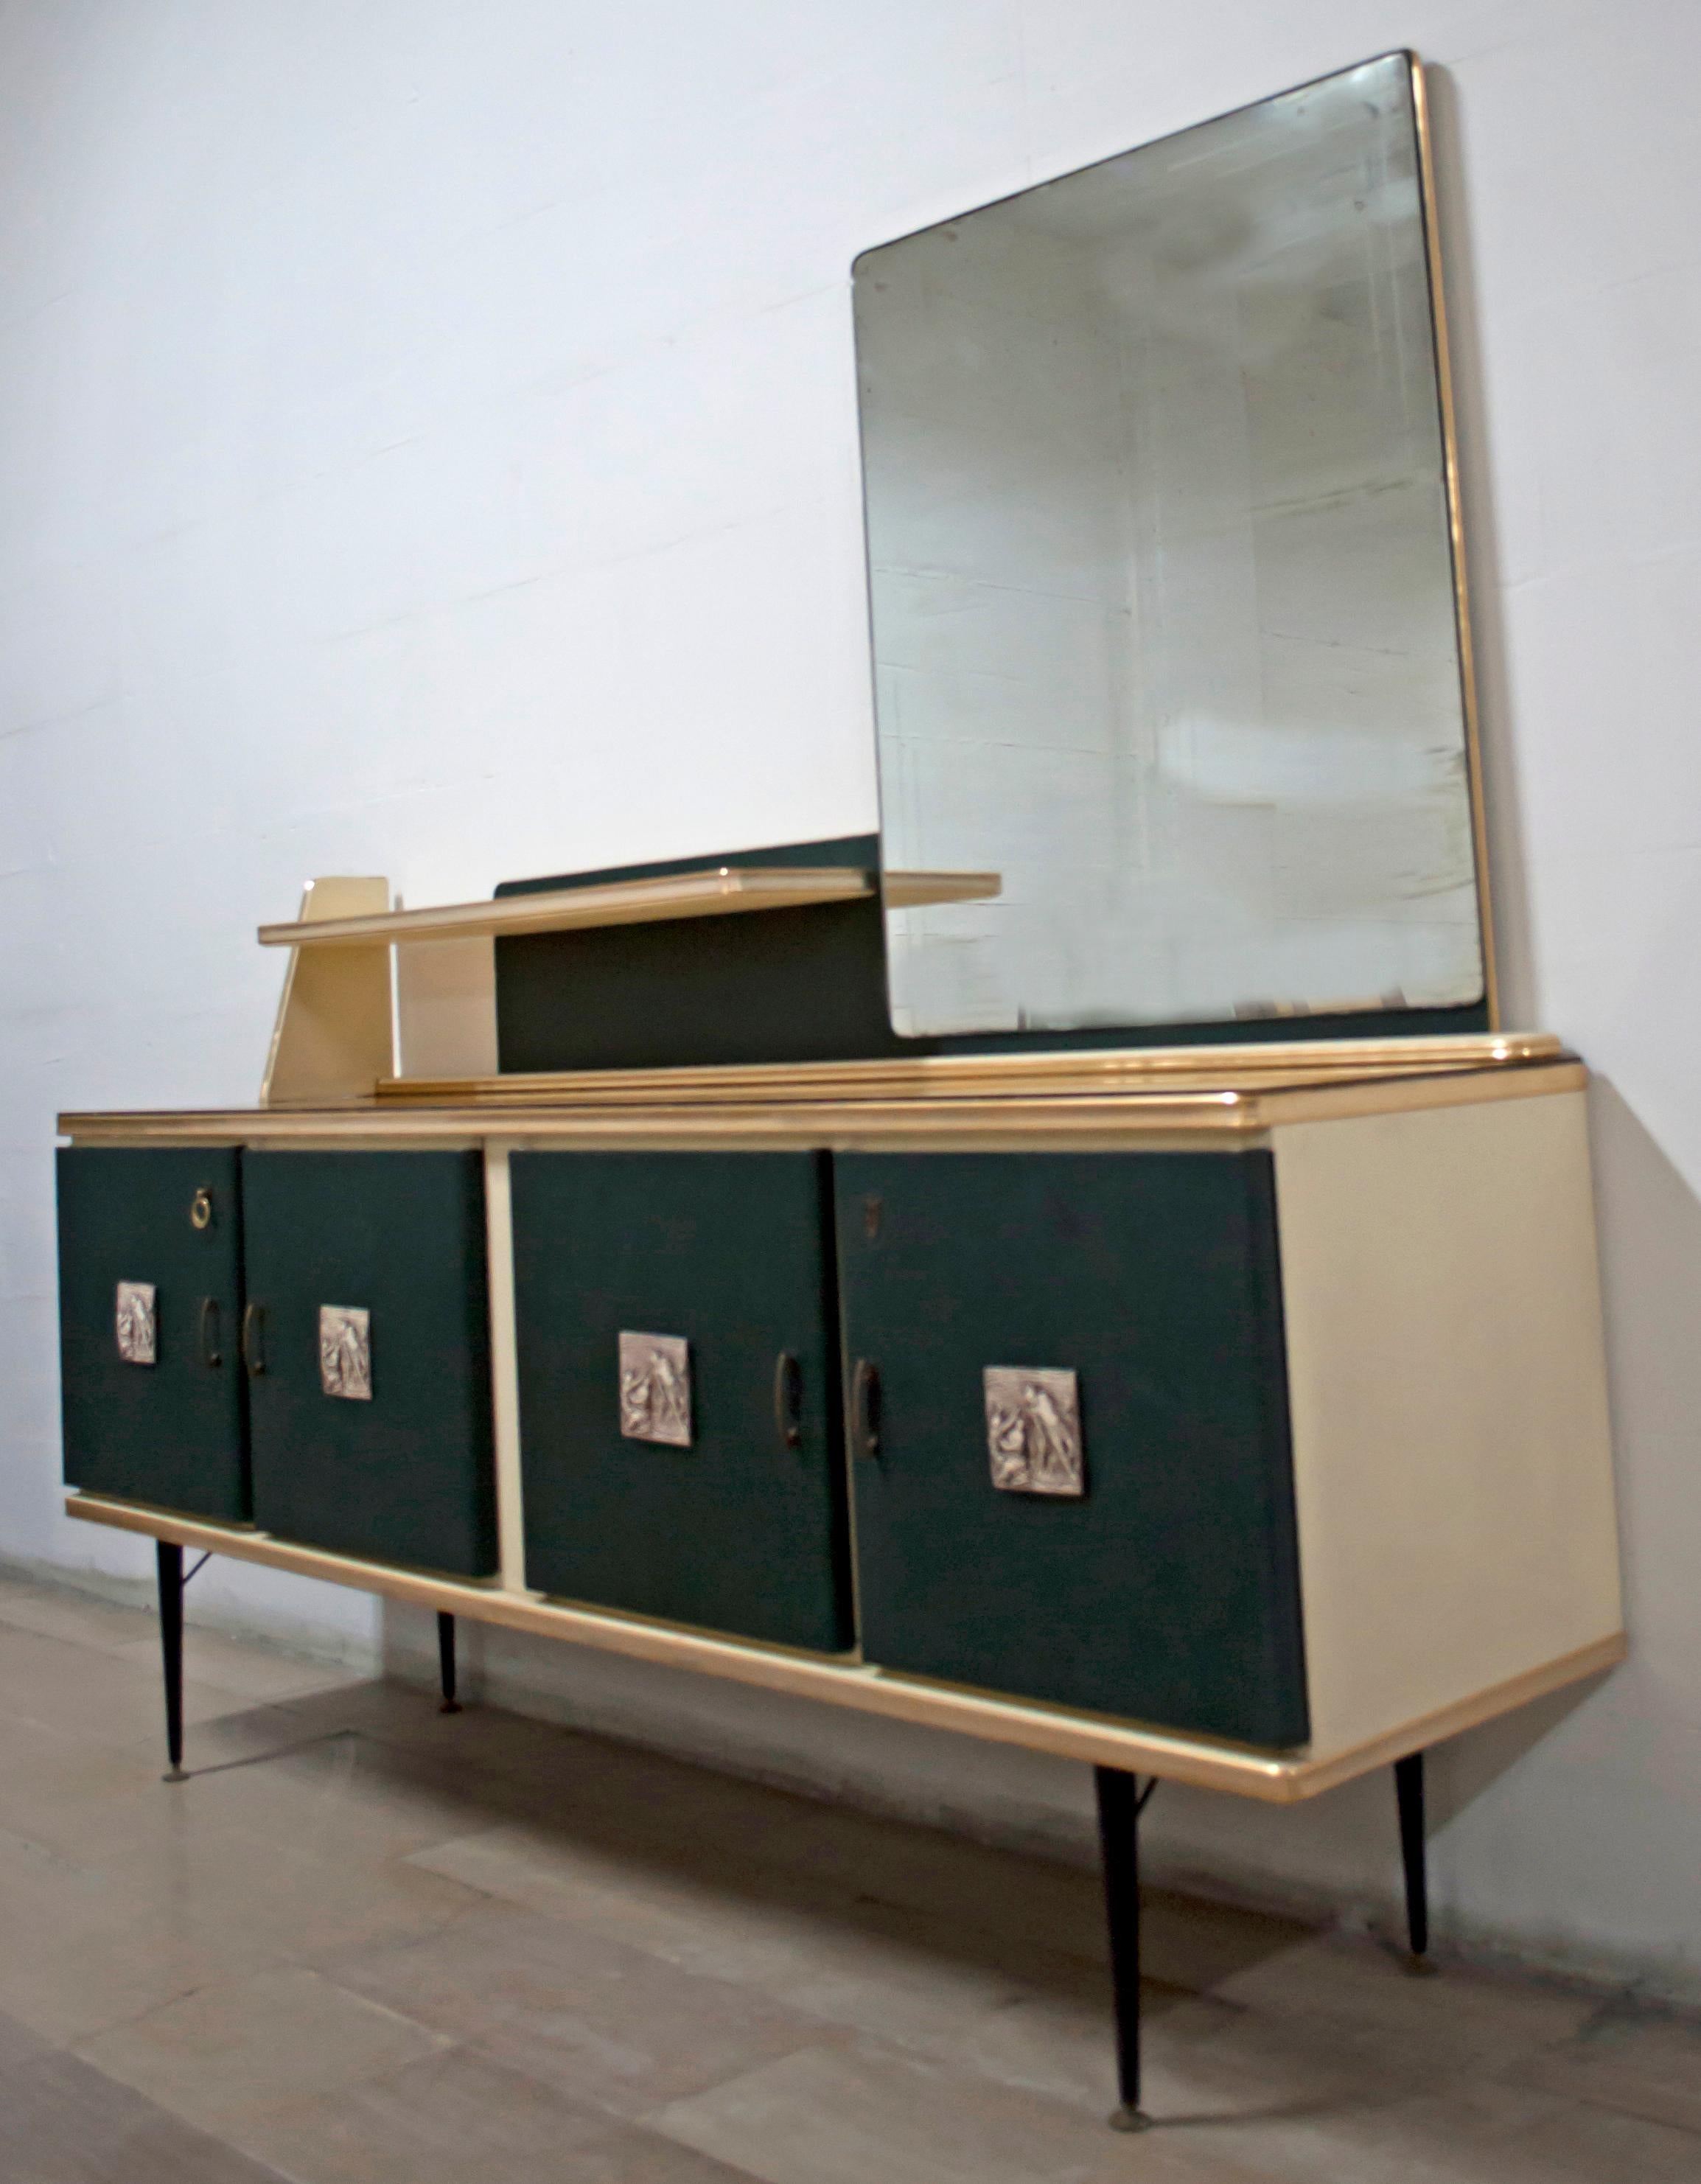 Viertüriges Sideboard aus den 1950er Jahren mit grünen Vinyltüren, inspiriert von der Produktion von Umberto Mascagni. Die Struktur des Hauptkörpers ist aus europäischem Holz gefertigt. Dieses Stück hat ein cremefarbenes Vinyl mit eloxiertem